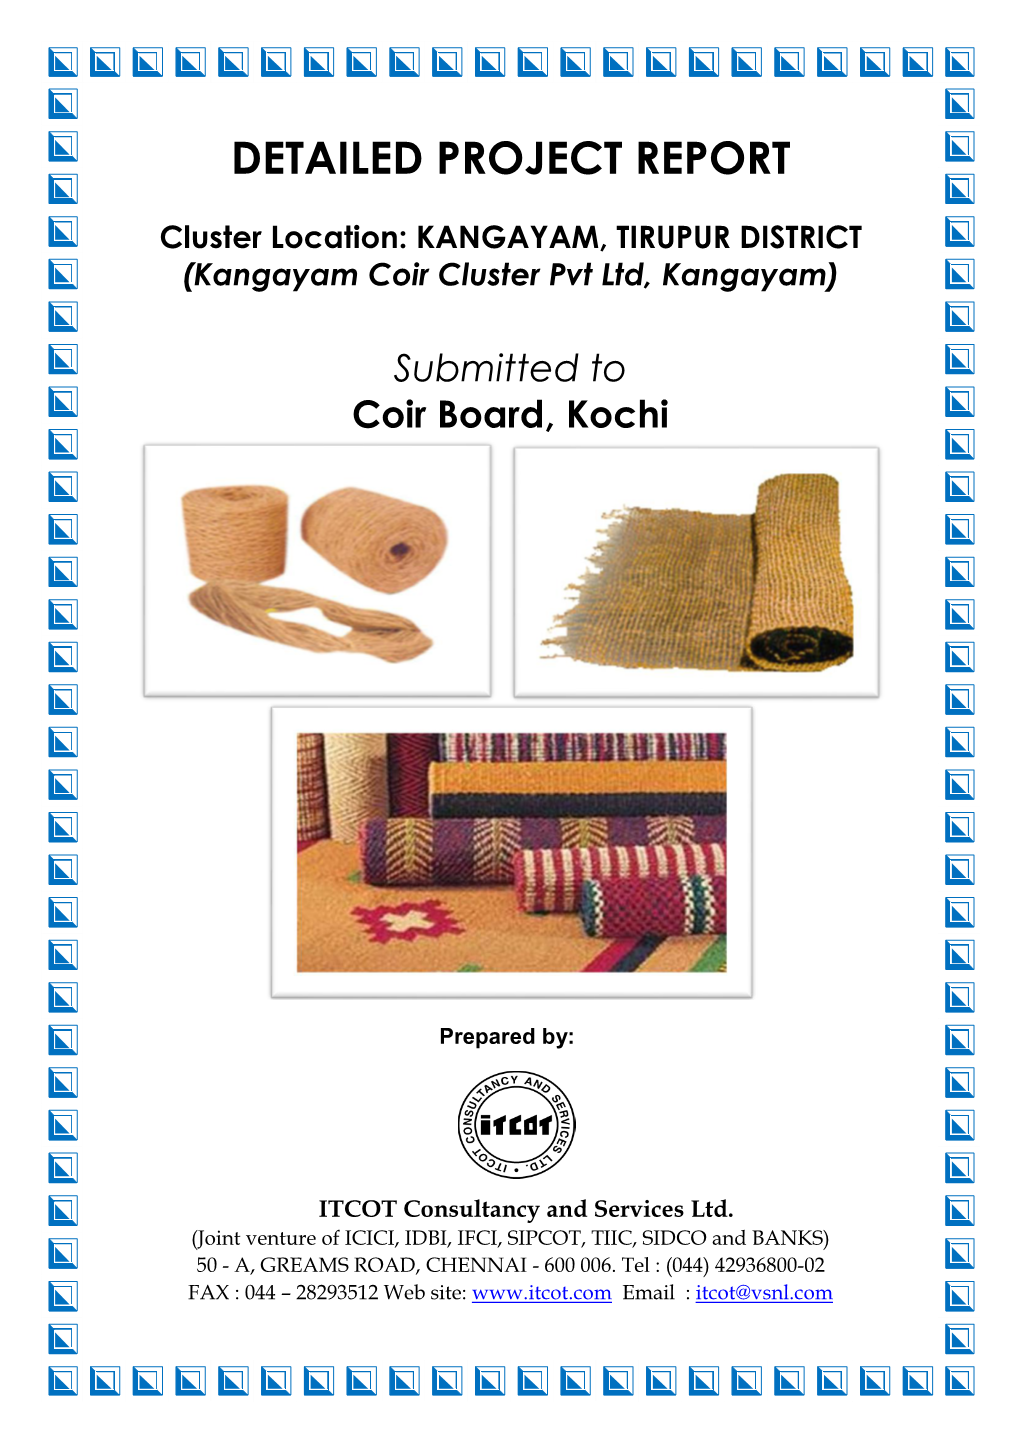 KANGAYAM, TIRUPUR DISTRICT (Kangayam Coir Cluster Pvt Ltd, Kangayam)